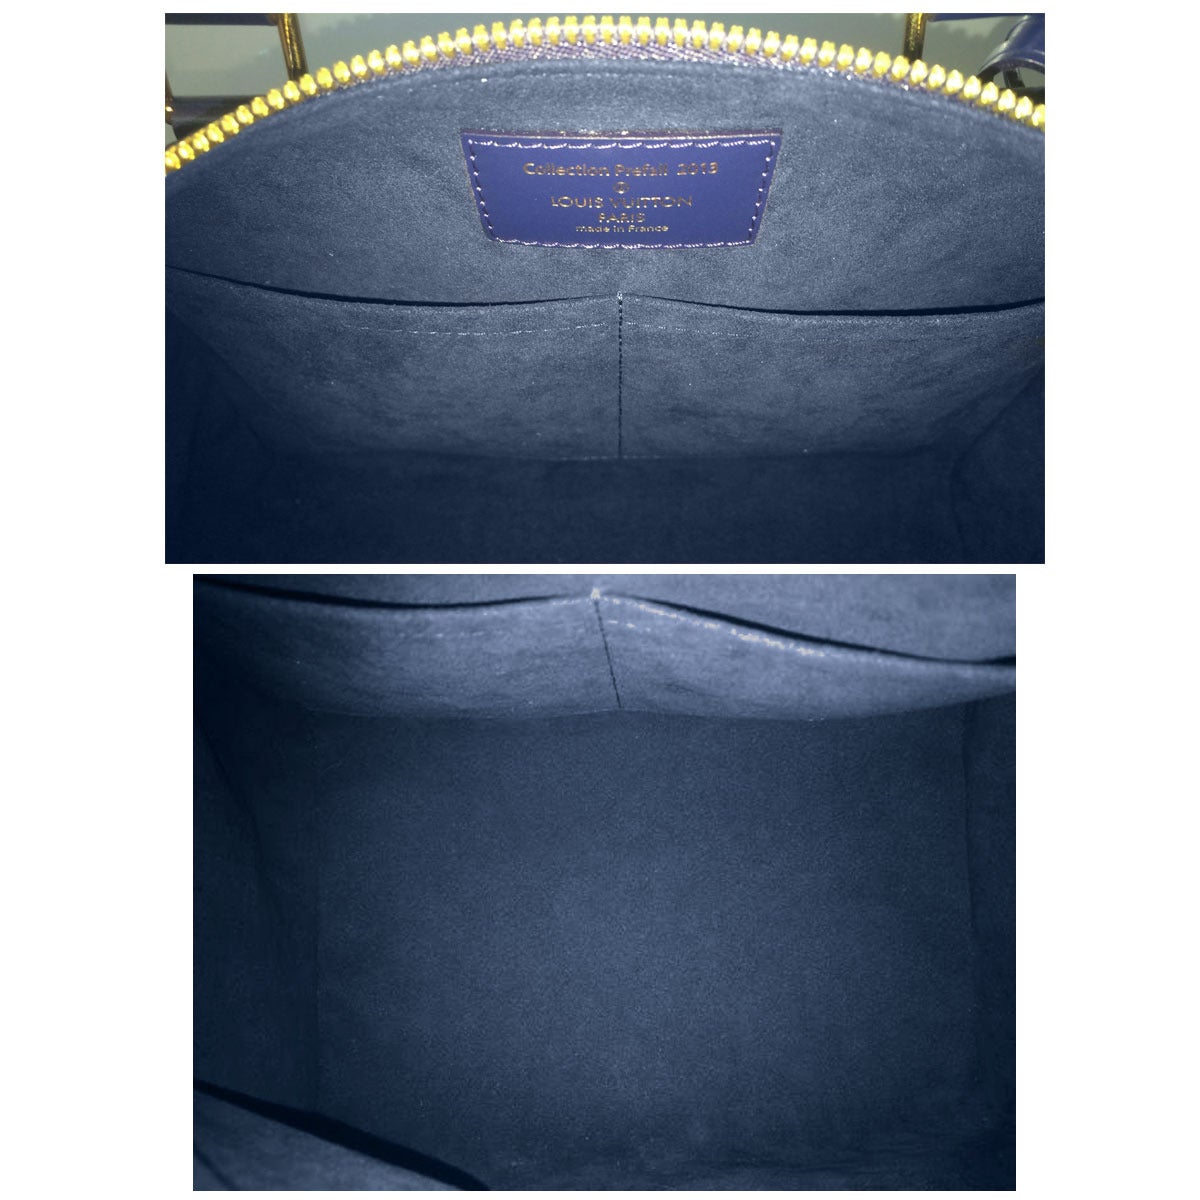 Louis Vuitton Sequins Speedy 30 Damier Pailletes Infini Ebene Bag 1